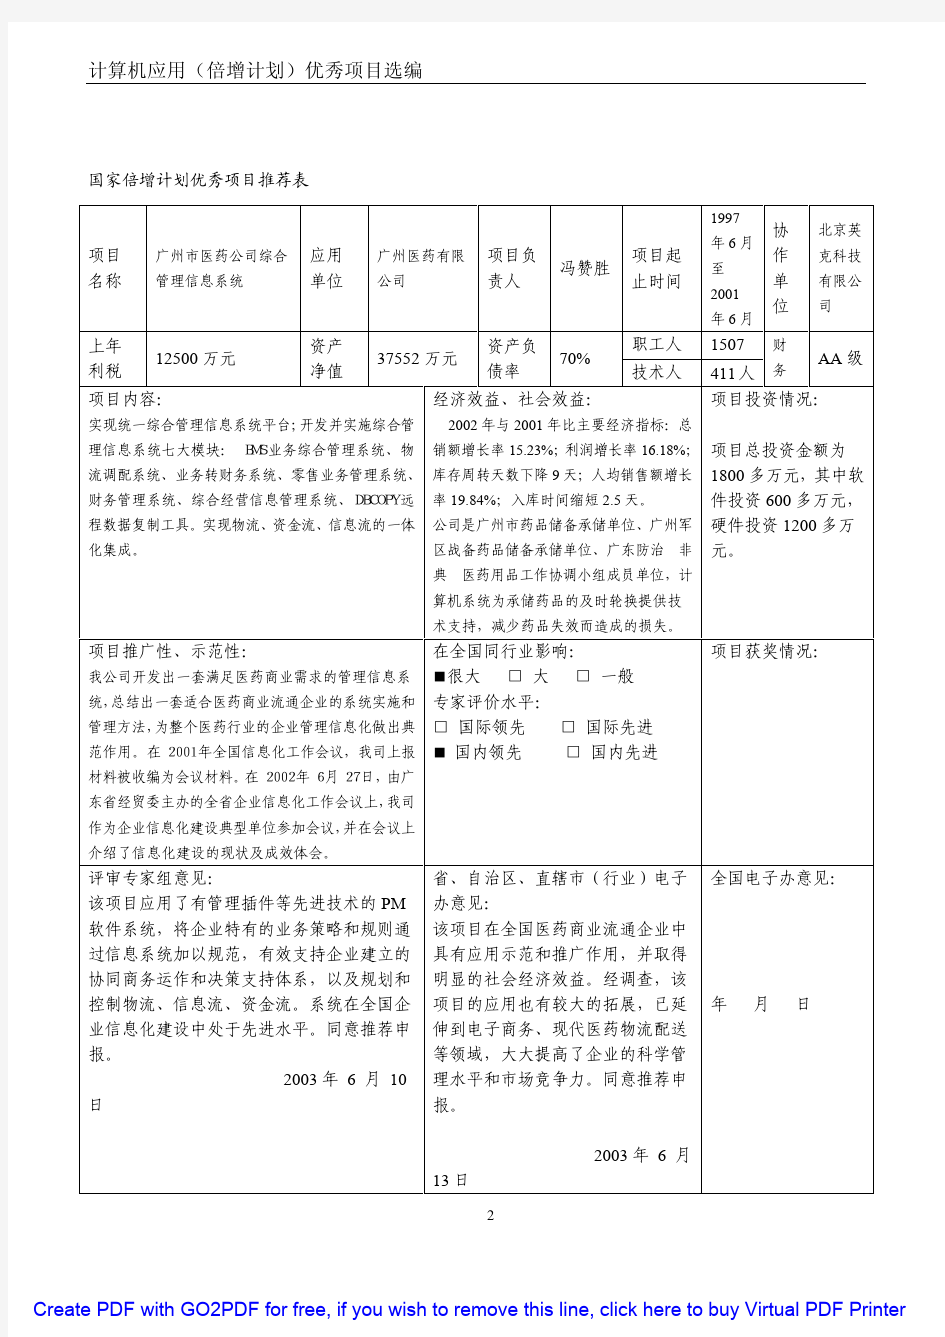 67、广州市医药公司综合管理信息系统  广州市医药有限公司